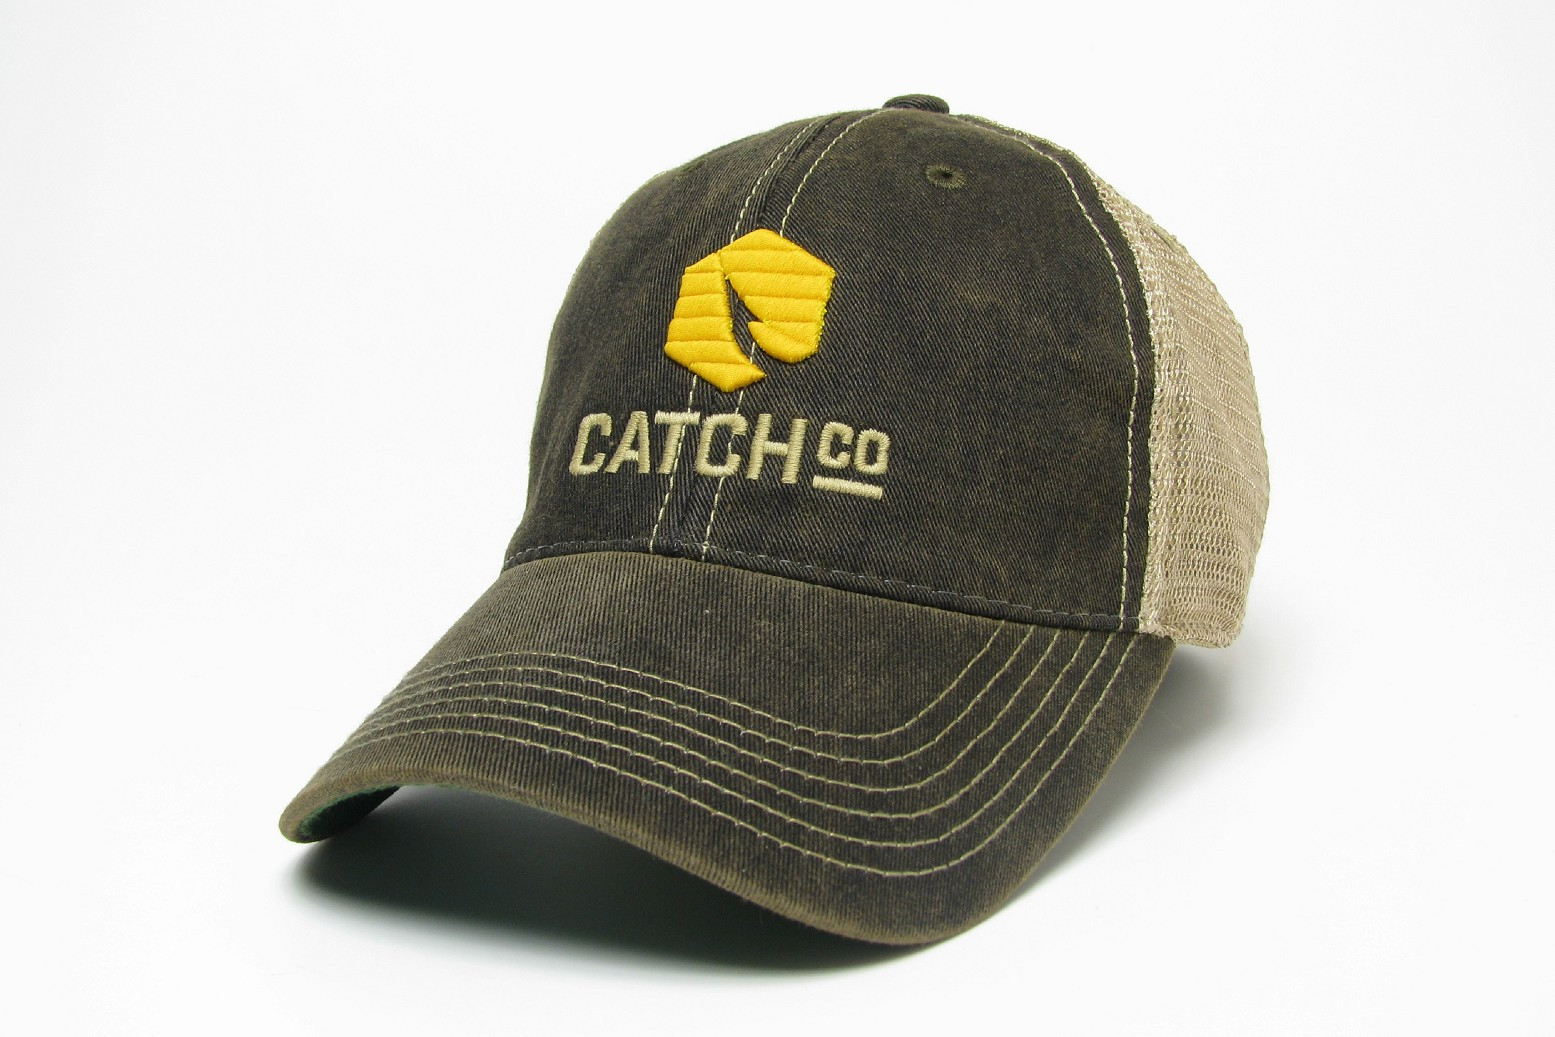 Catch Co. Trucker Hat